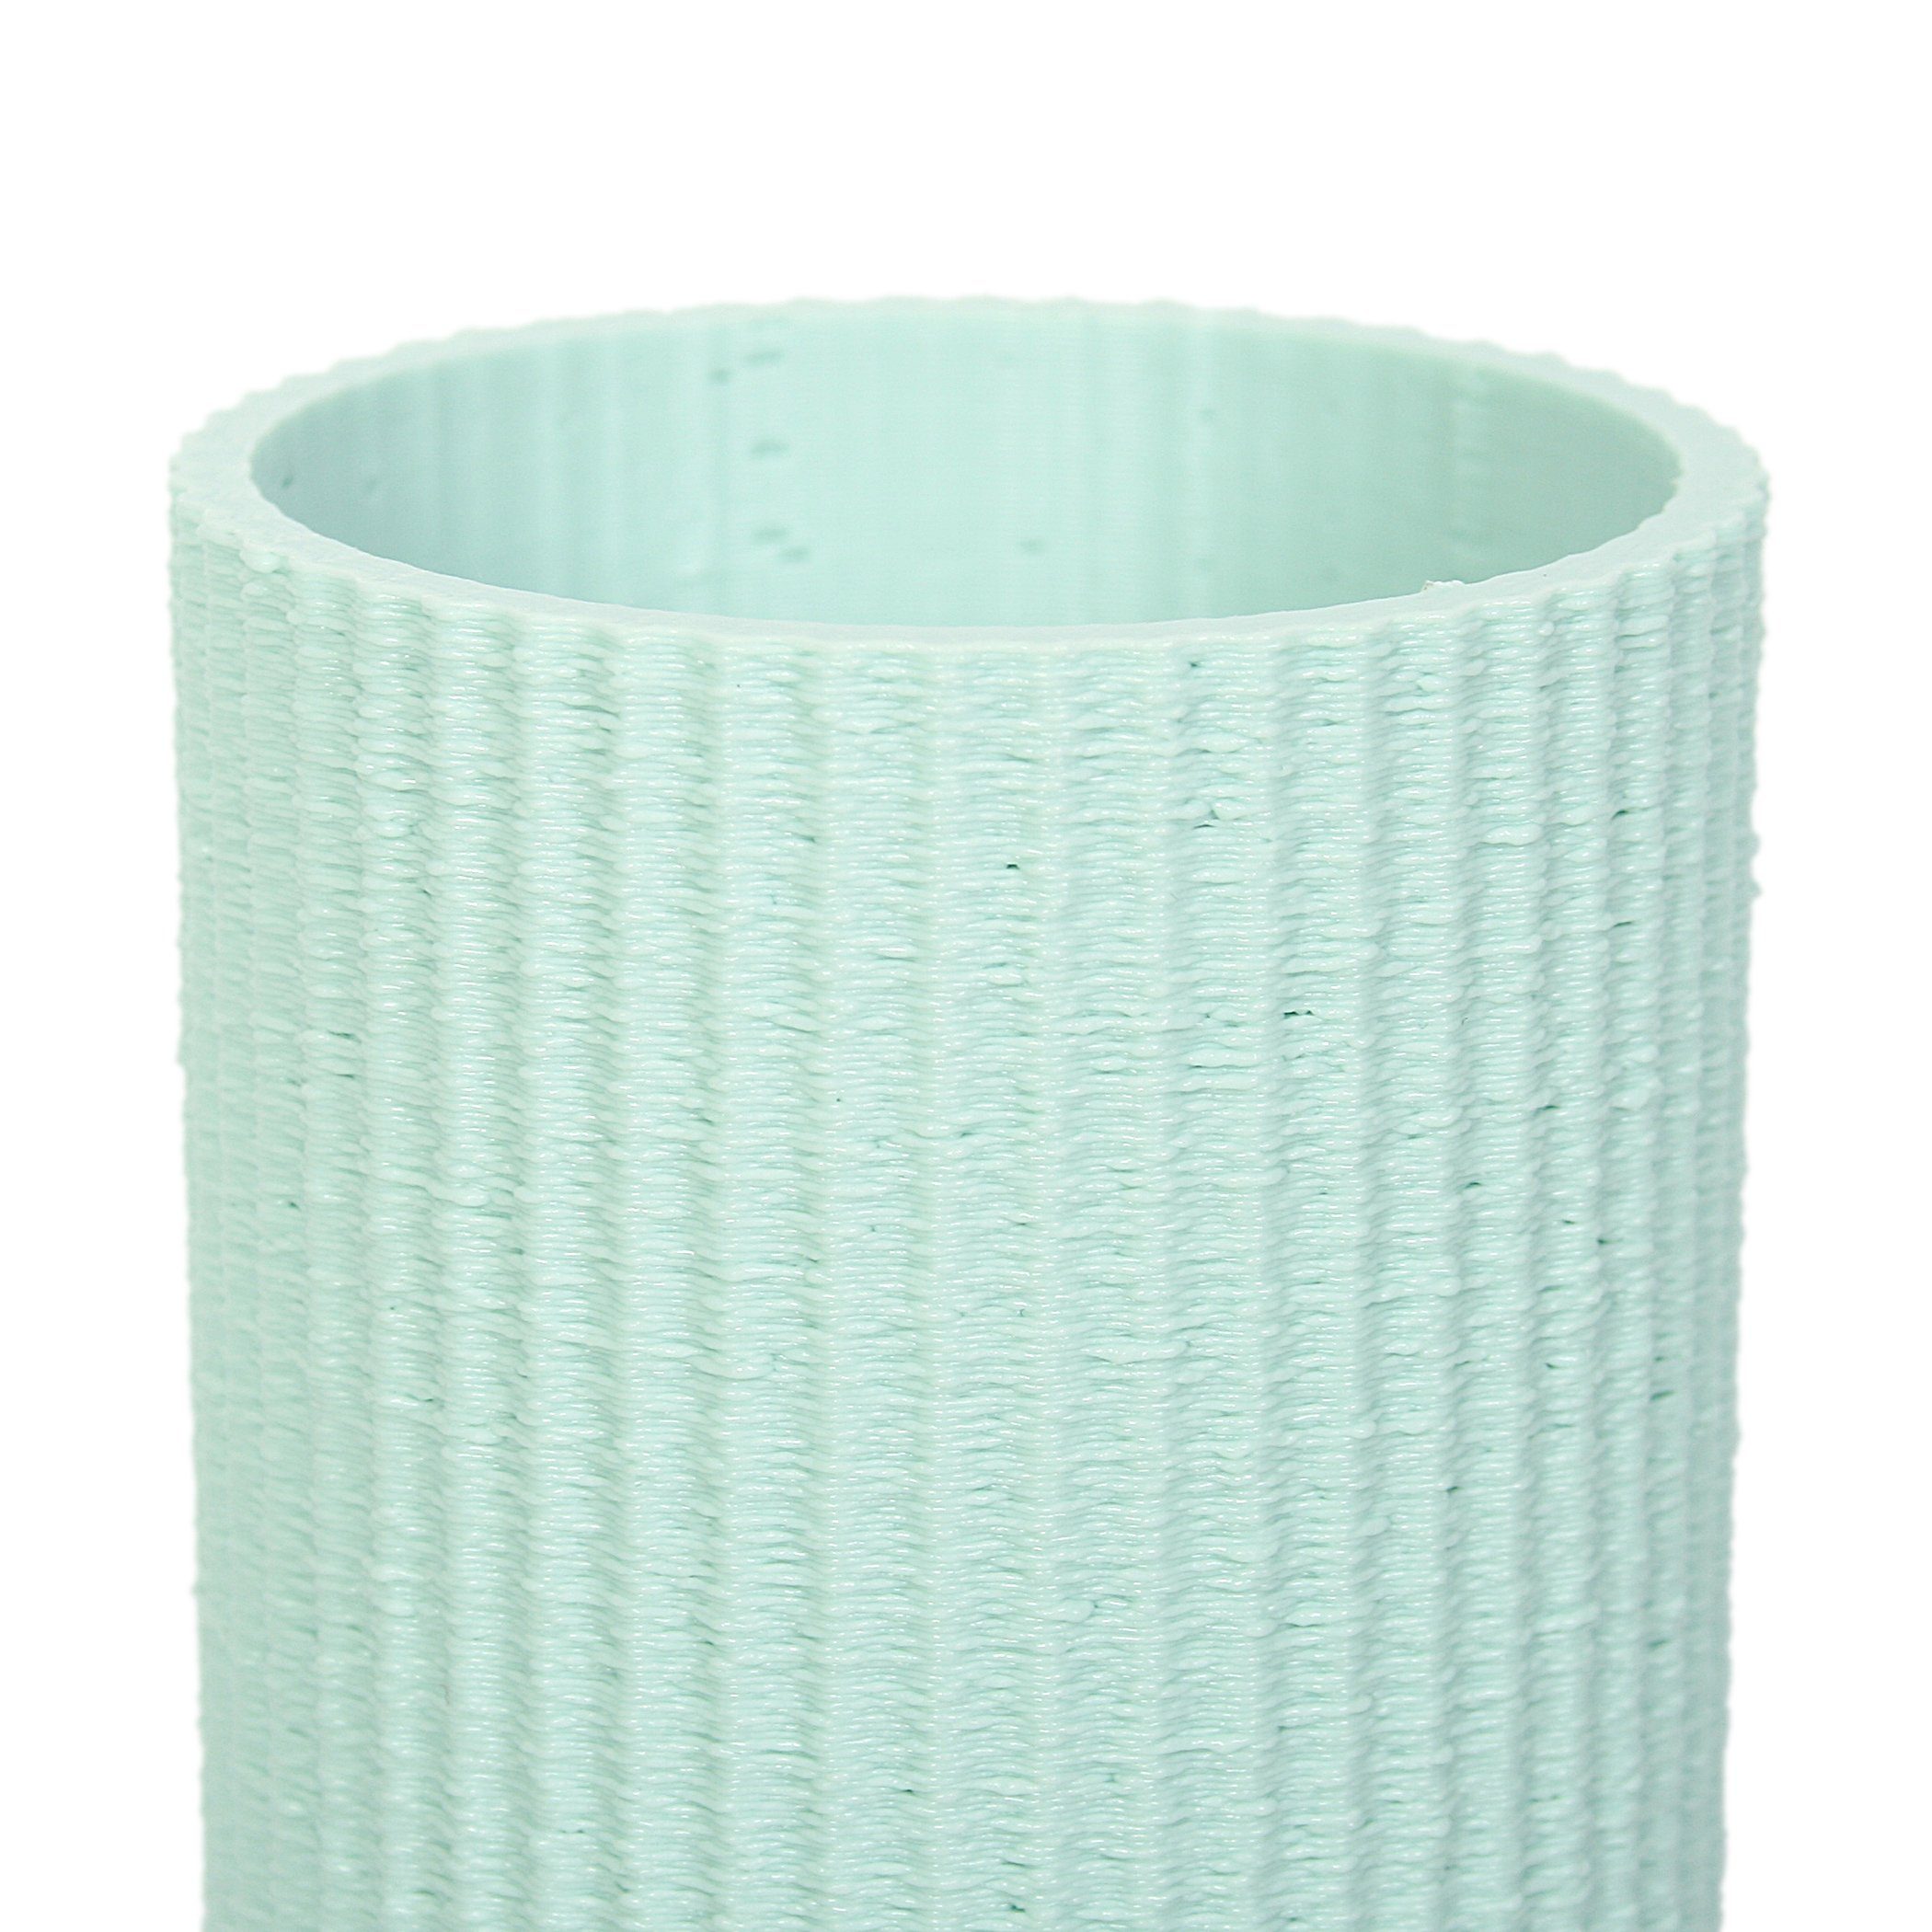 Kreative Feder Dekovase Designer Vase nachwachsenden Rohstoffen; Dekorative aus & Water bruchsicher aus wasserdicht Bio-Kunststoff, Green – Blumenvase